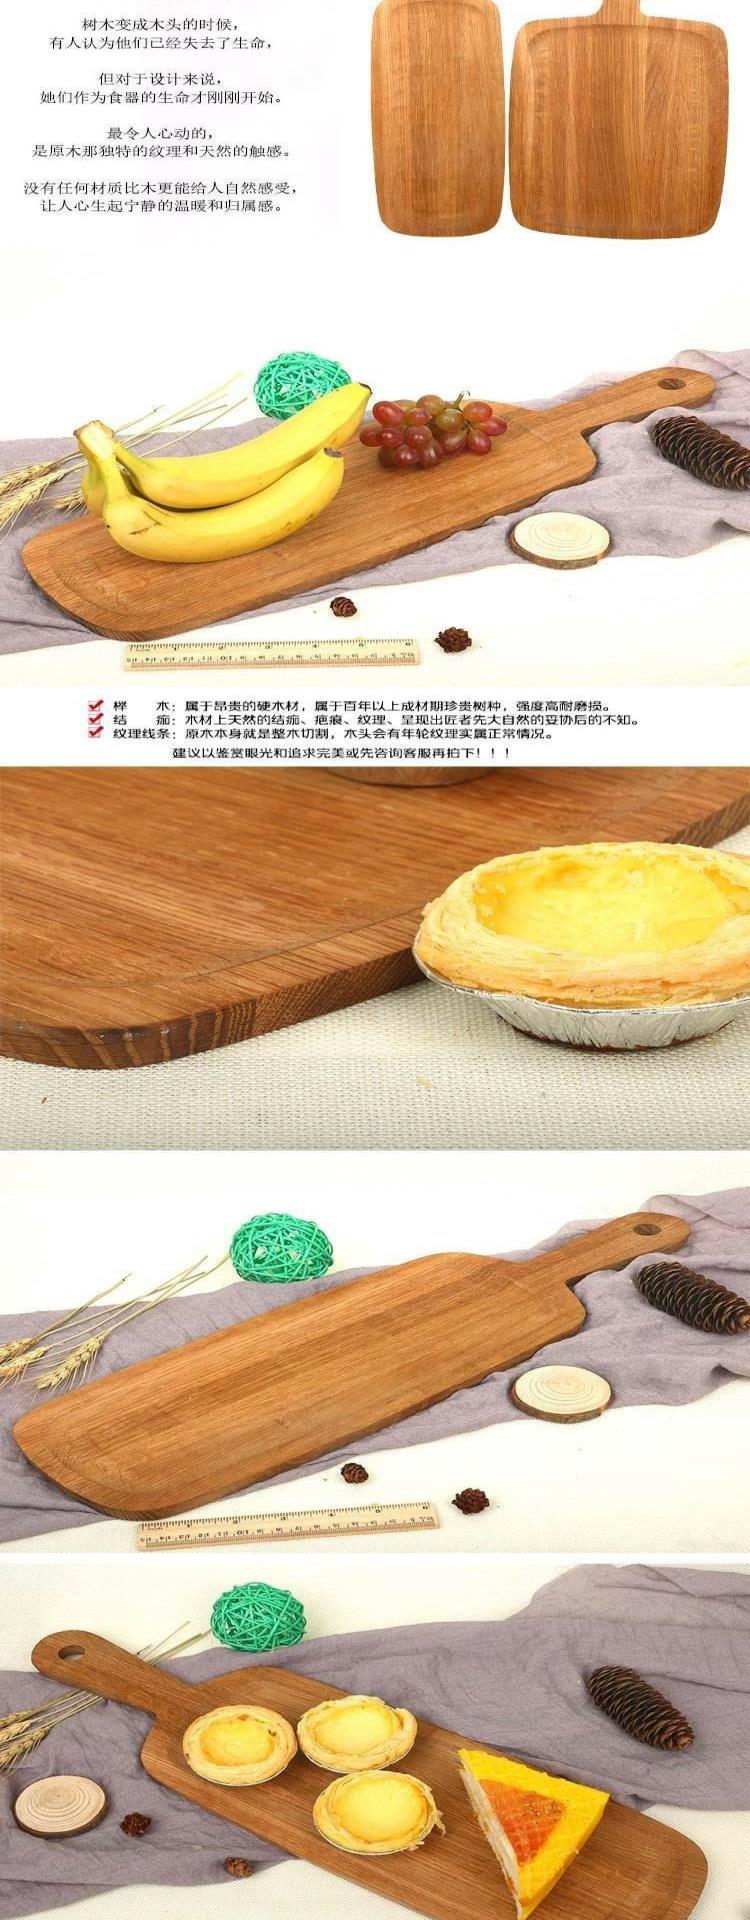 Đĩa gỗ, khay hình chữ nhật màu sáng, bộ đồ ăn bằng gỗ sồi nguyên khối sẫm màu, đĩa ăn chống bỏng, làm ván gỗ - Tấm